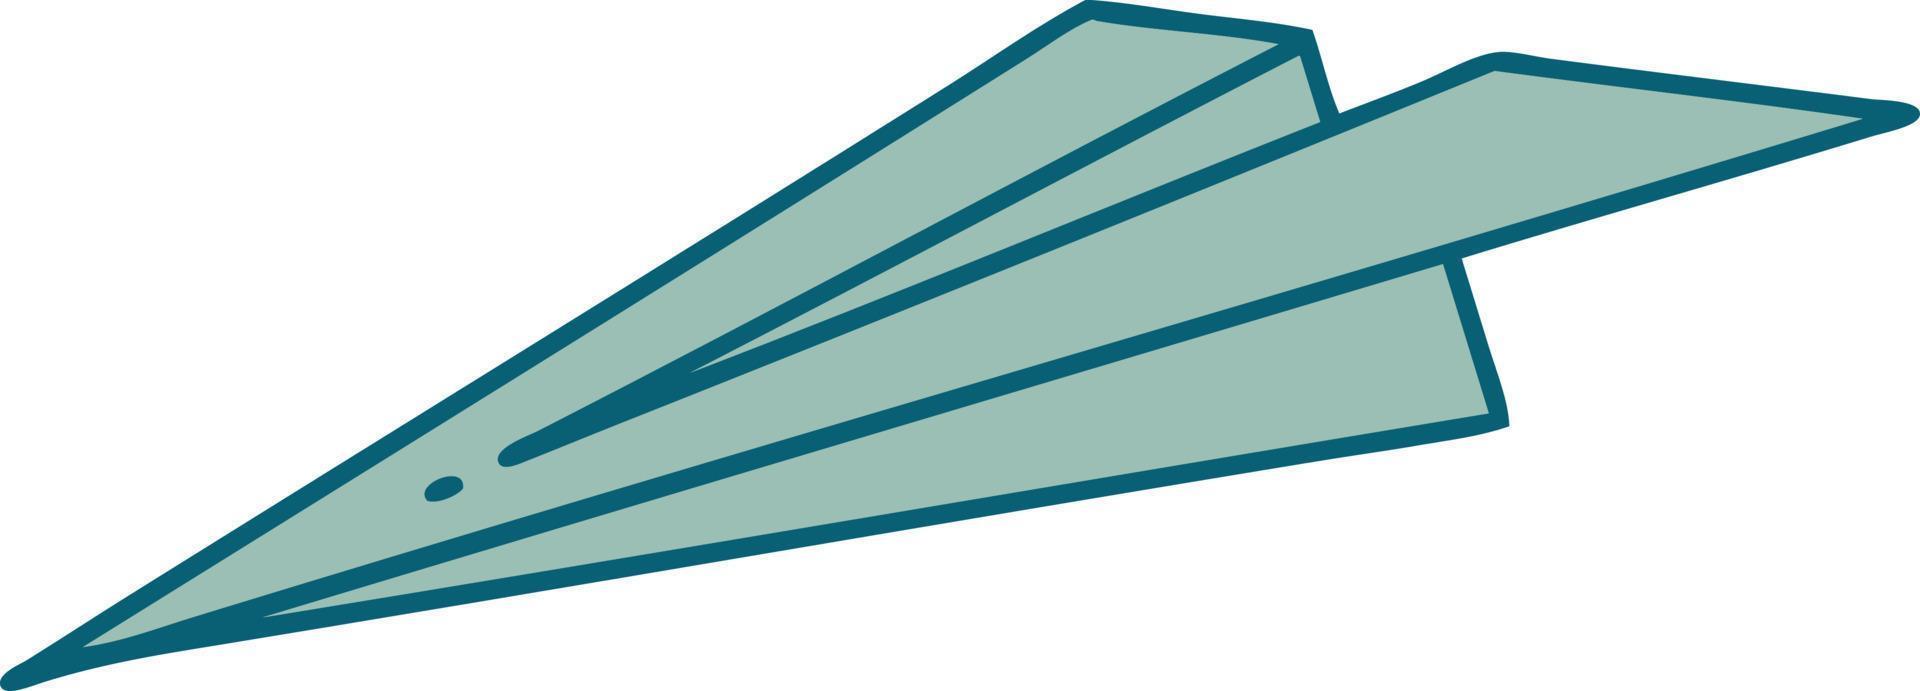 ikonisches Bild im Tattoo-Stil eines Papierflugzeugs vektor